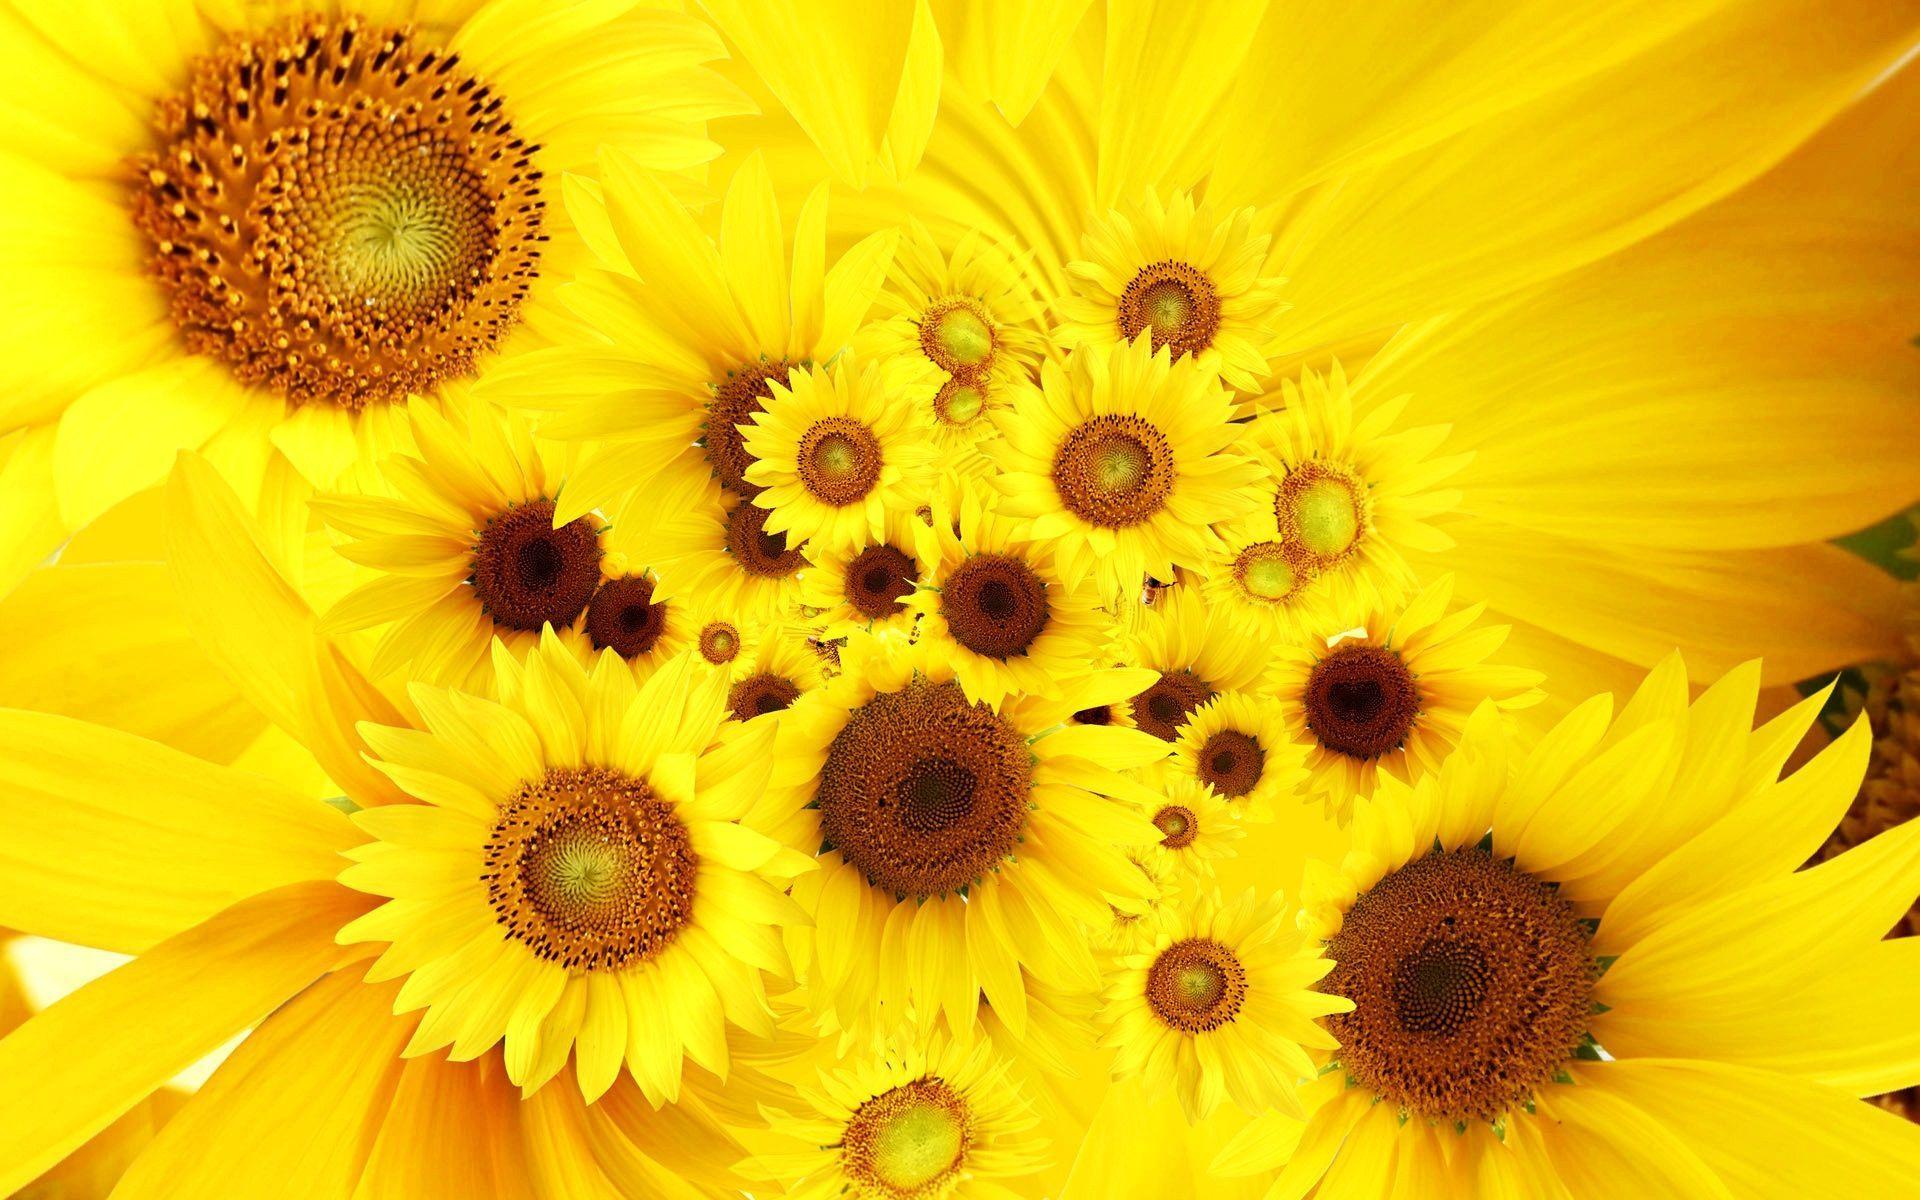 Sunflowers Wallpapers là lựa chọn tuyệt vời cho những ai yêu thích bông hoa hướng dương. Với những hình ảnh sắc nét và đẹp mắt, mang đến cho bạn một hình nền máy tính hoàn hảo, tạo nên một không gian làm việc, giải trí thật thoải mái và dễ chịu.